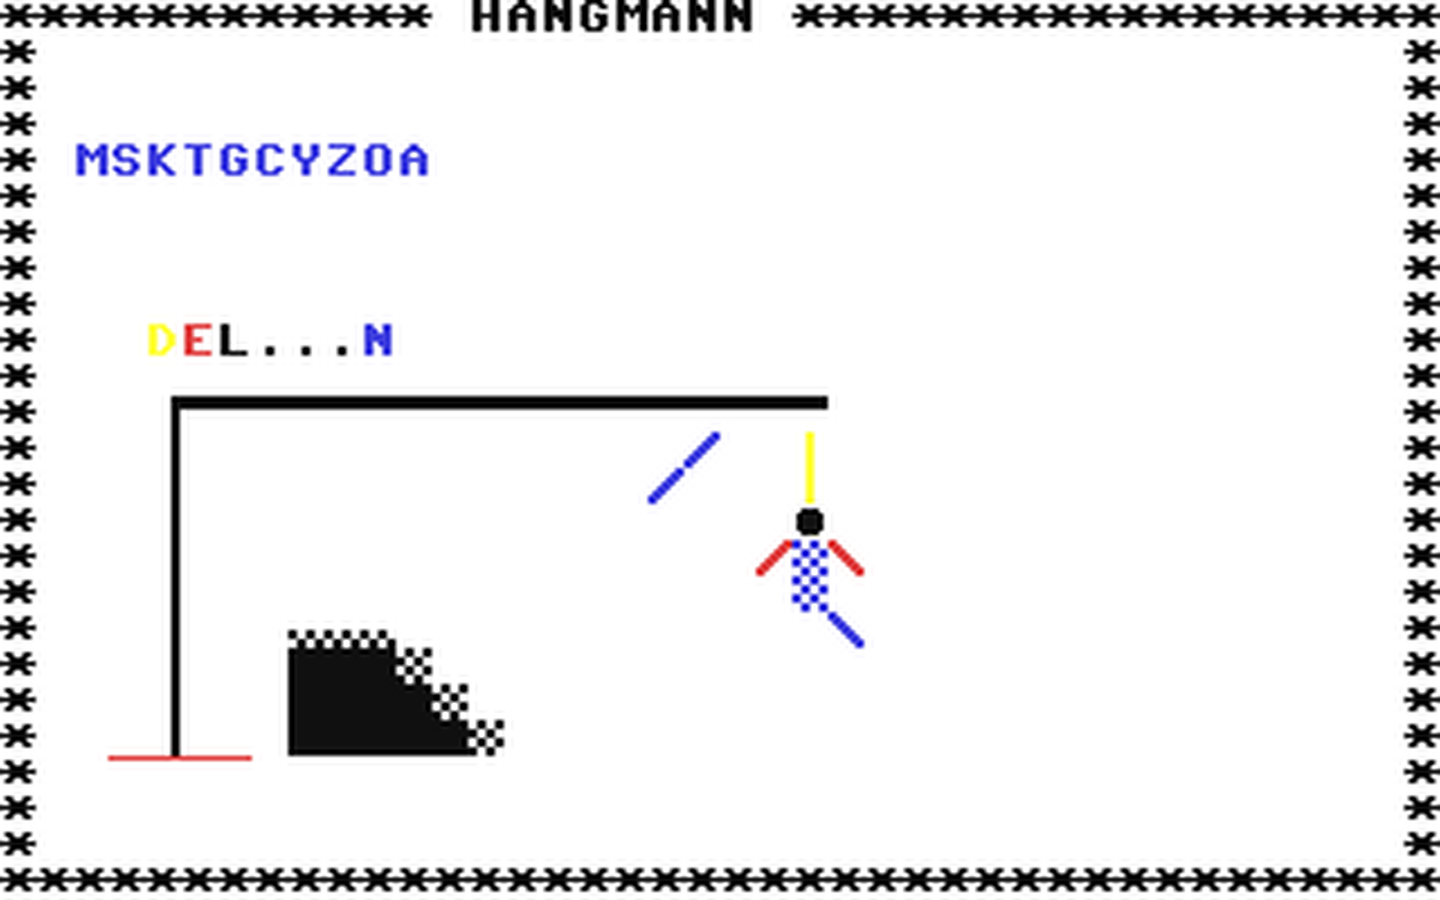 C64 GameBase Hangman